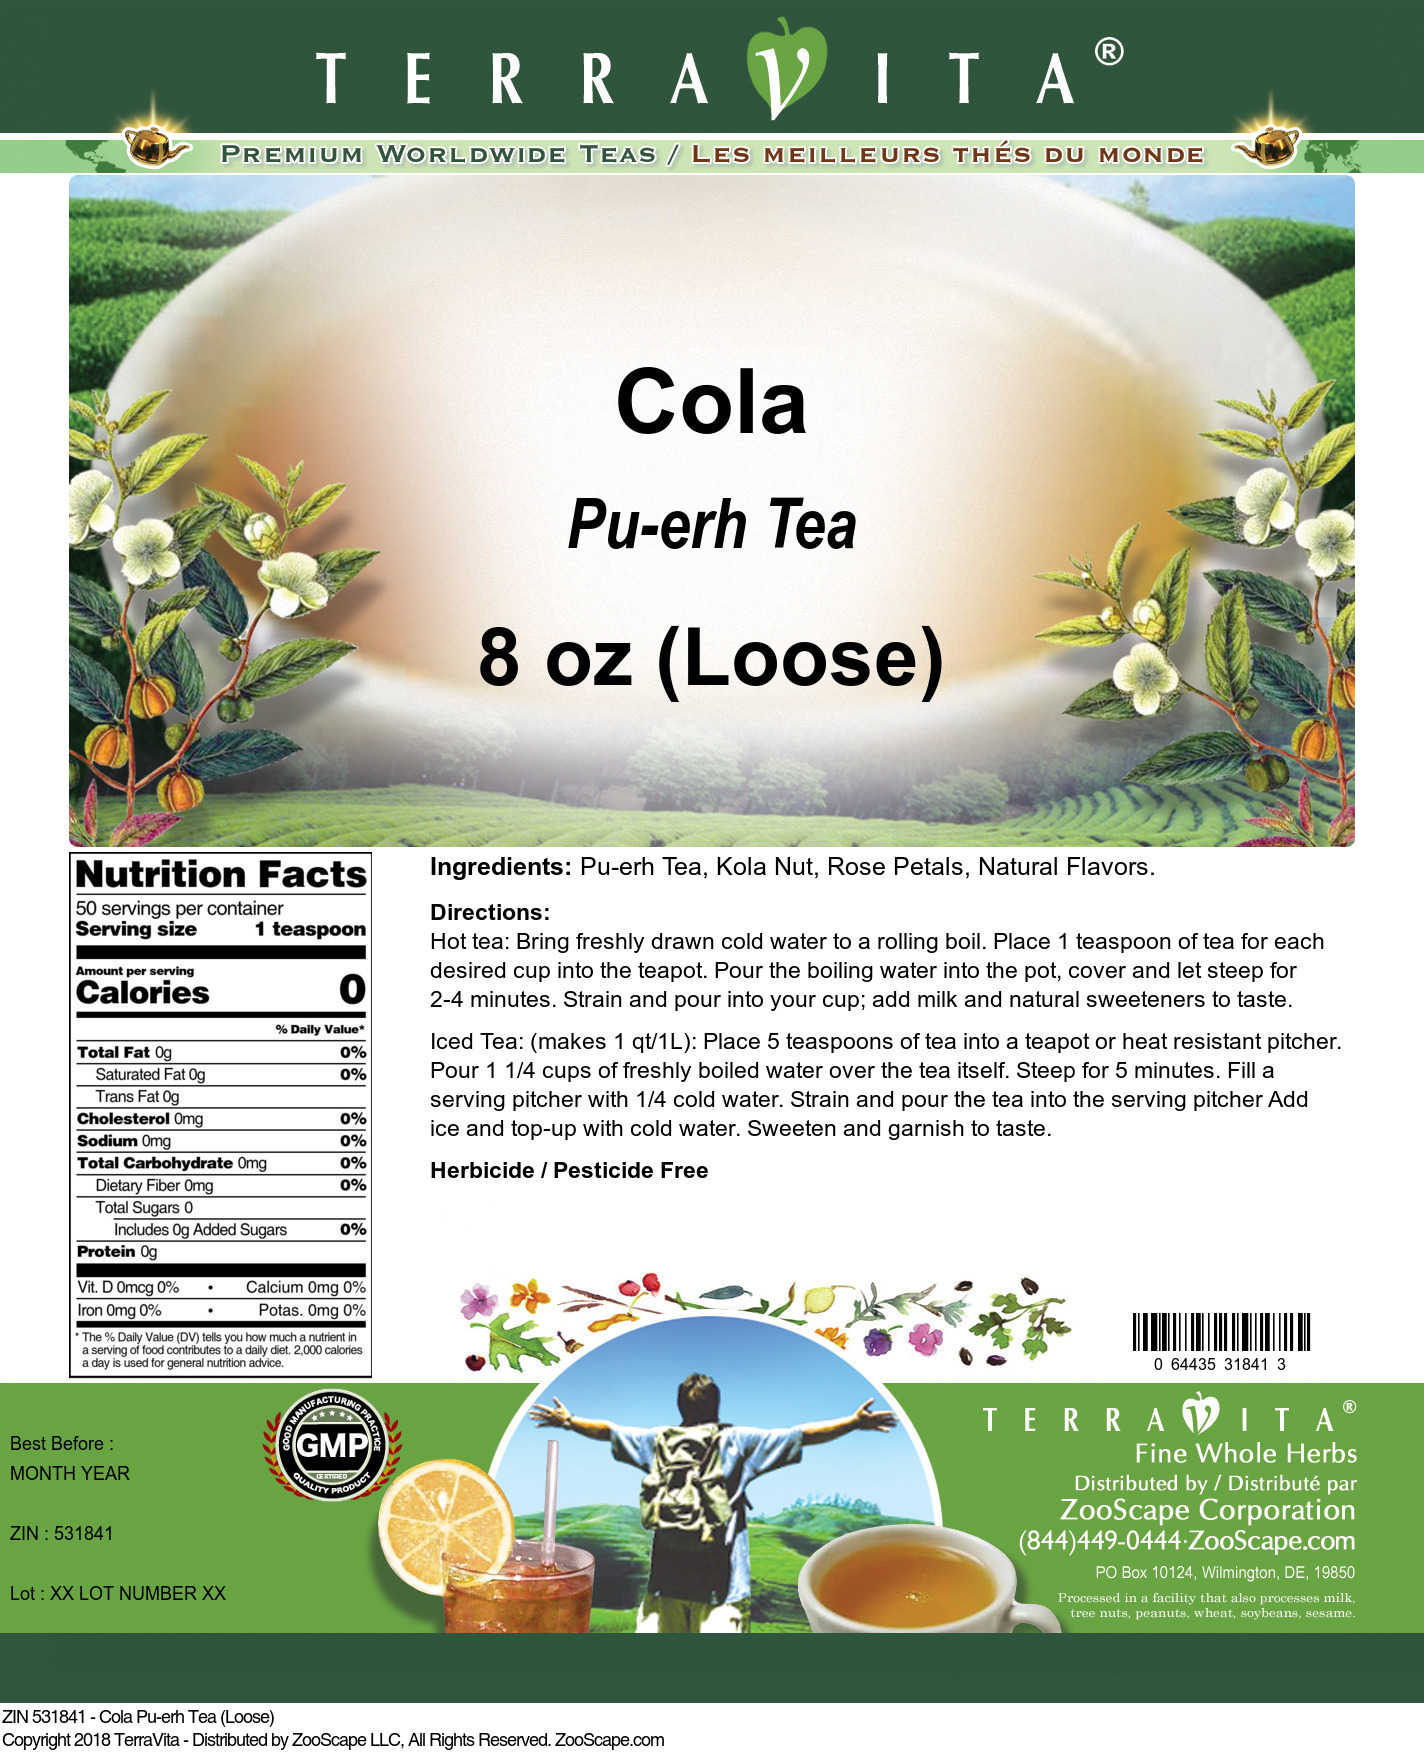 Cola Pu-erh Tea (Loose) - Label